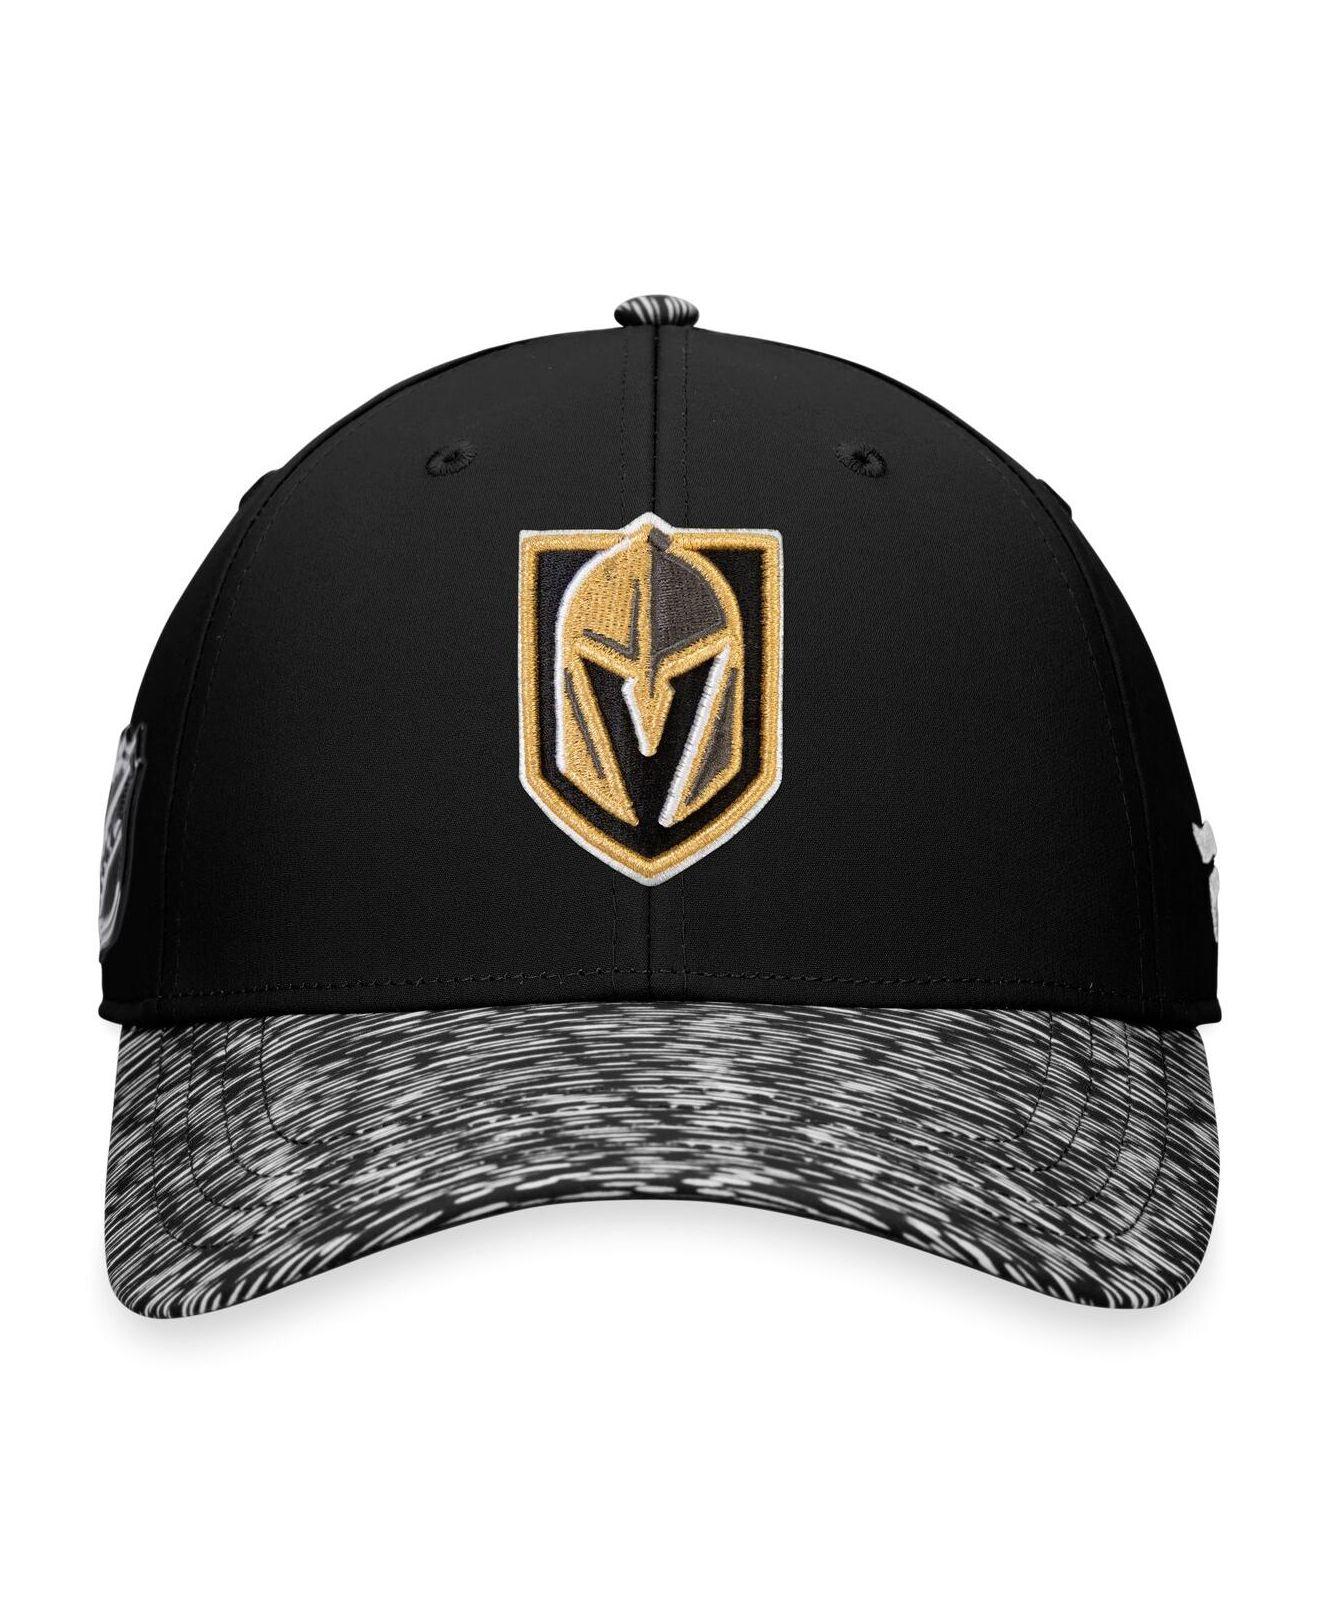 Vegas Golden Knights Fanatics Branded Authentic Pro Locker Room Flex Hat -  Black/Gold